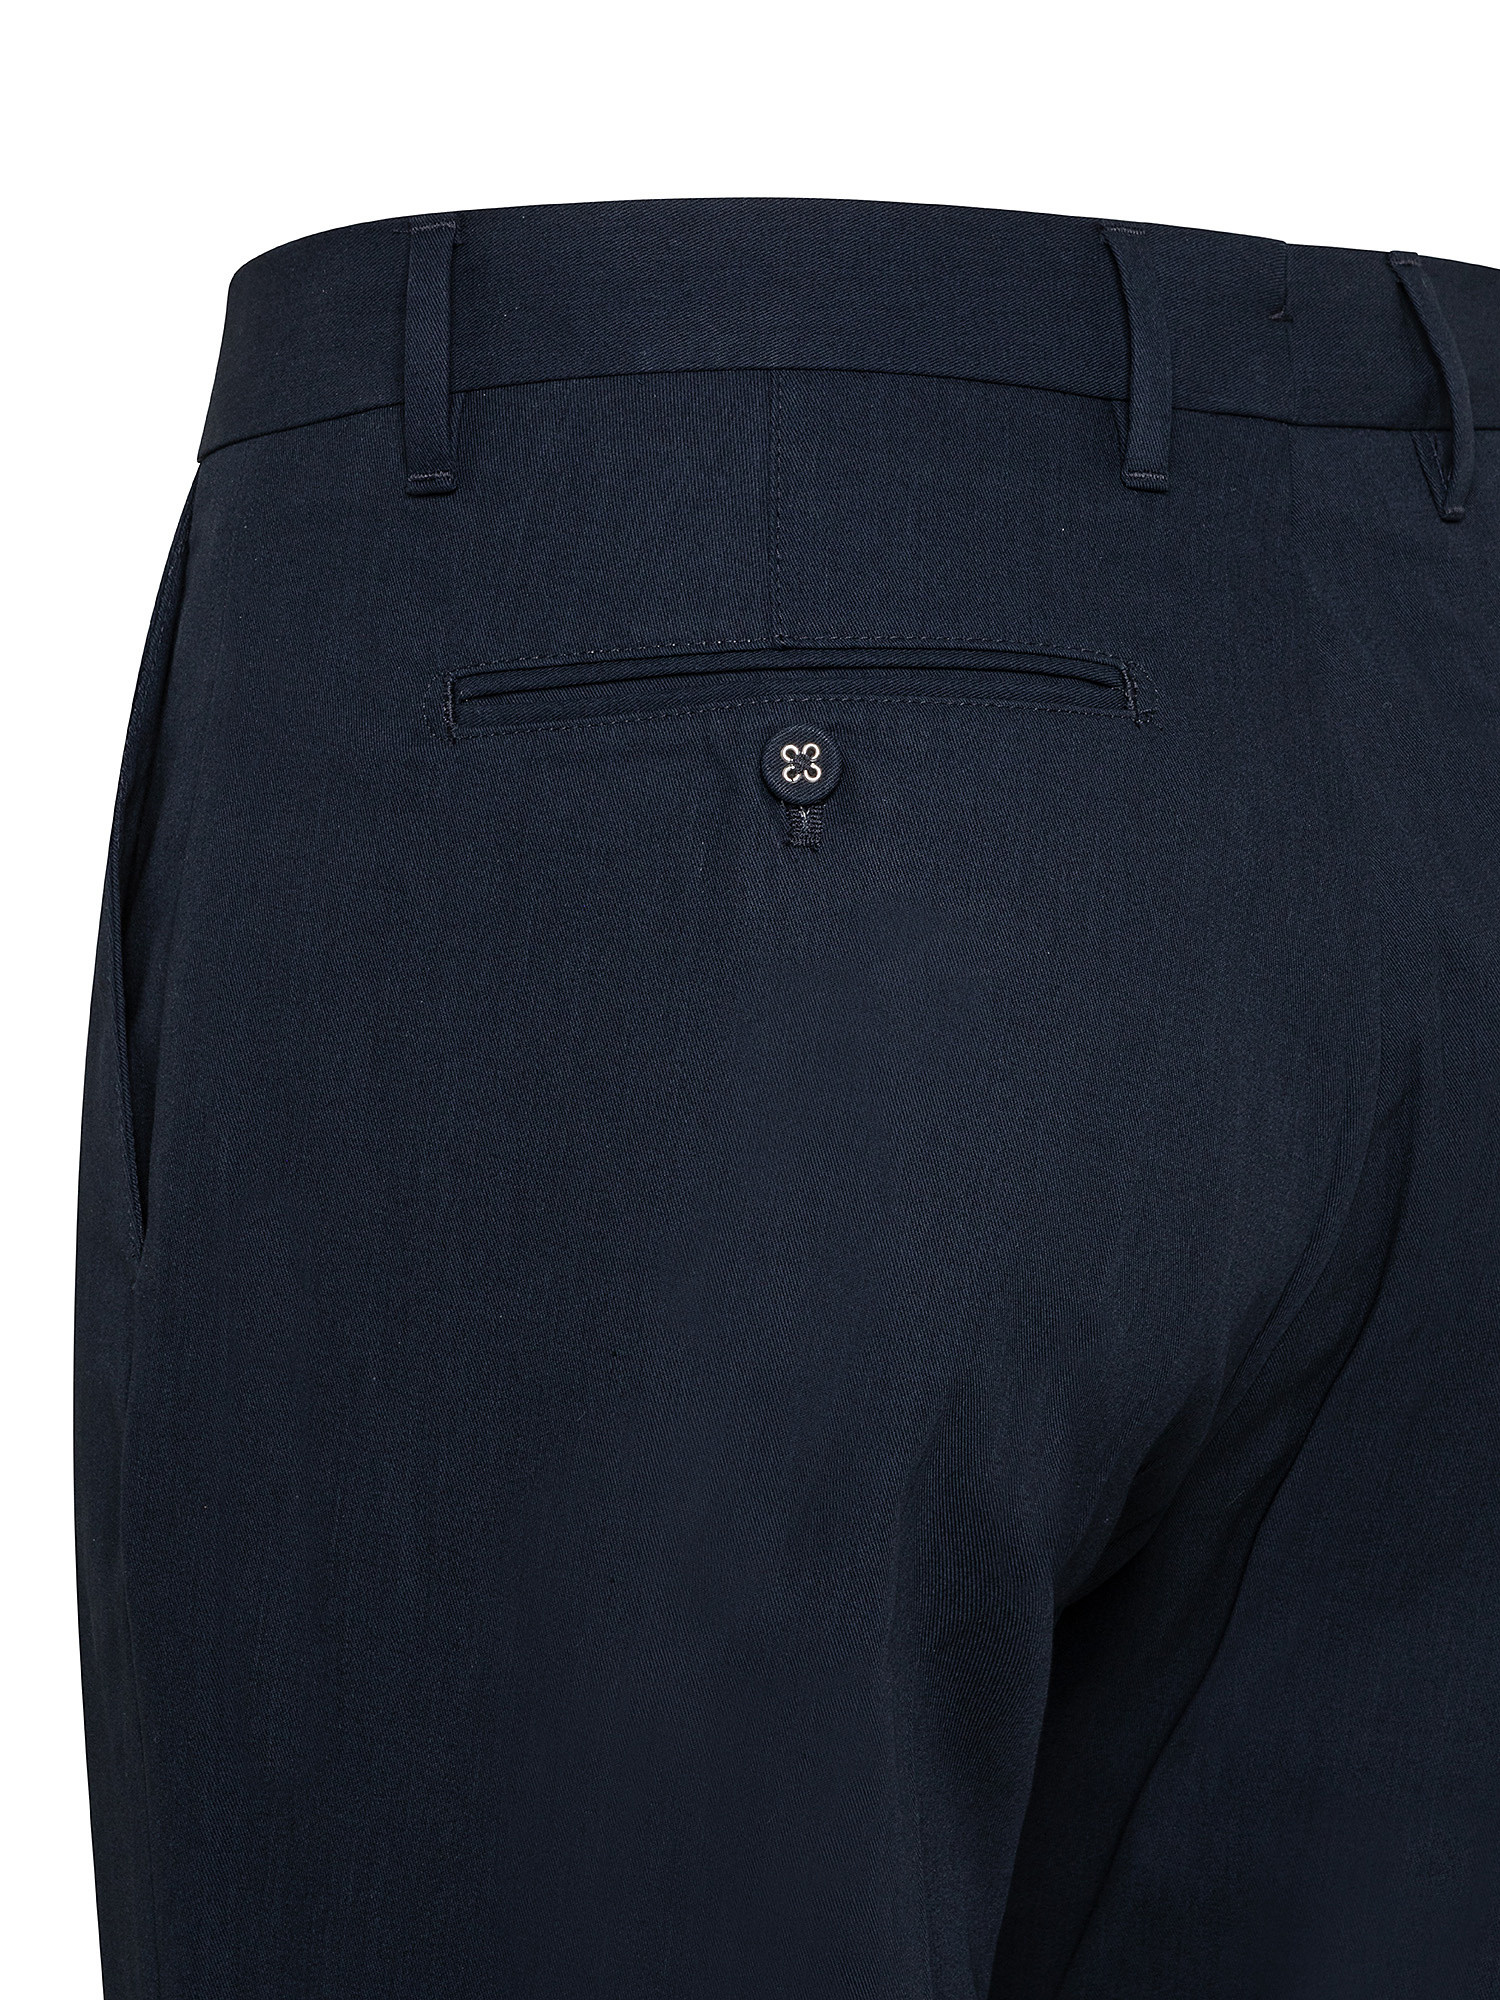 Pantaloni Atelier, Blu scuro, large image number 2